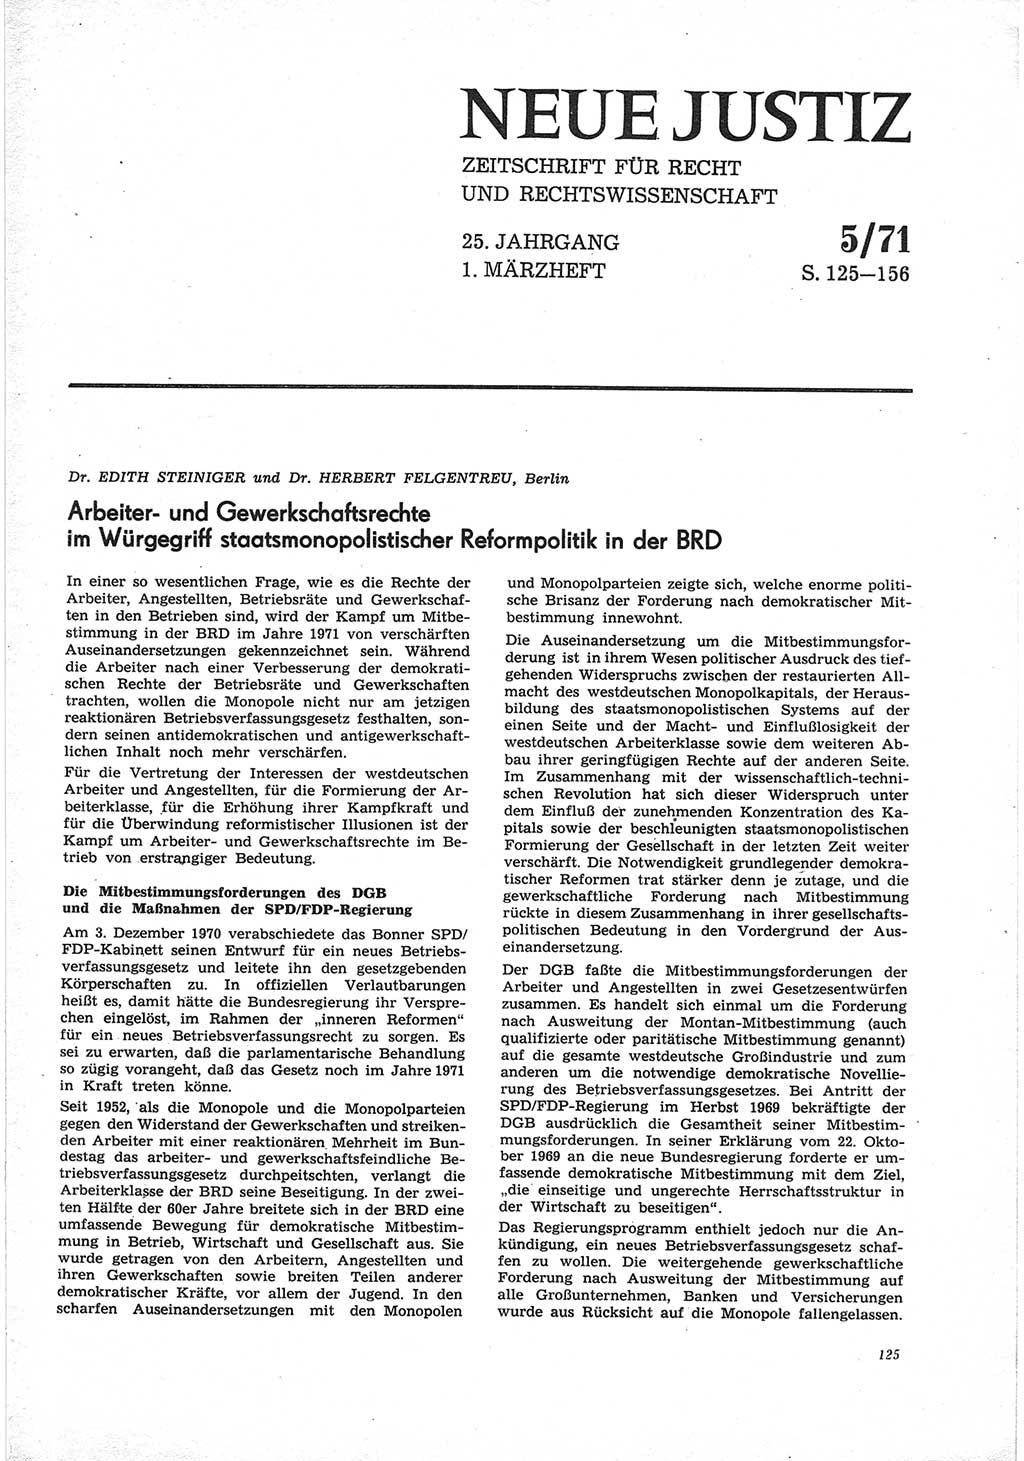 Neue Justiz (NJ), Zeitschrift für Recht und Rechtswissenschaft [Deutsche Demokratische Republik (DDR)], 25. Jahrgang 1971, Seite 125 (NJ DDR 1971, S. 125)